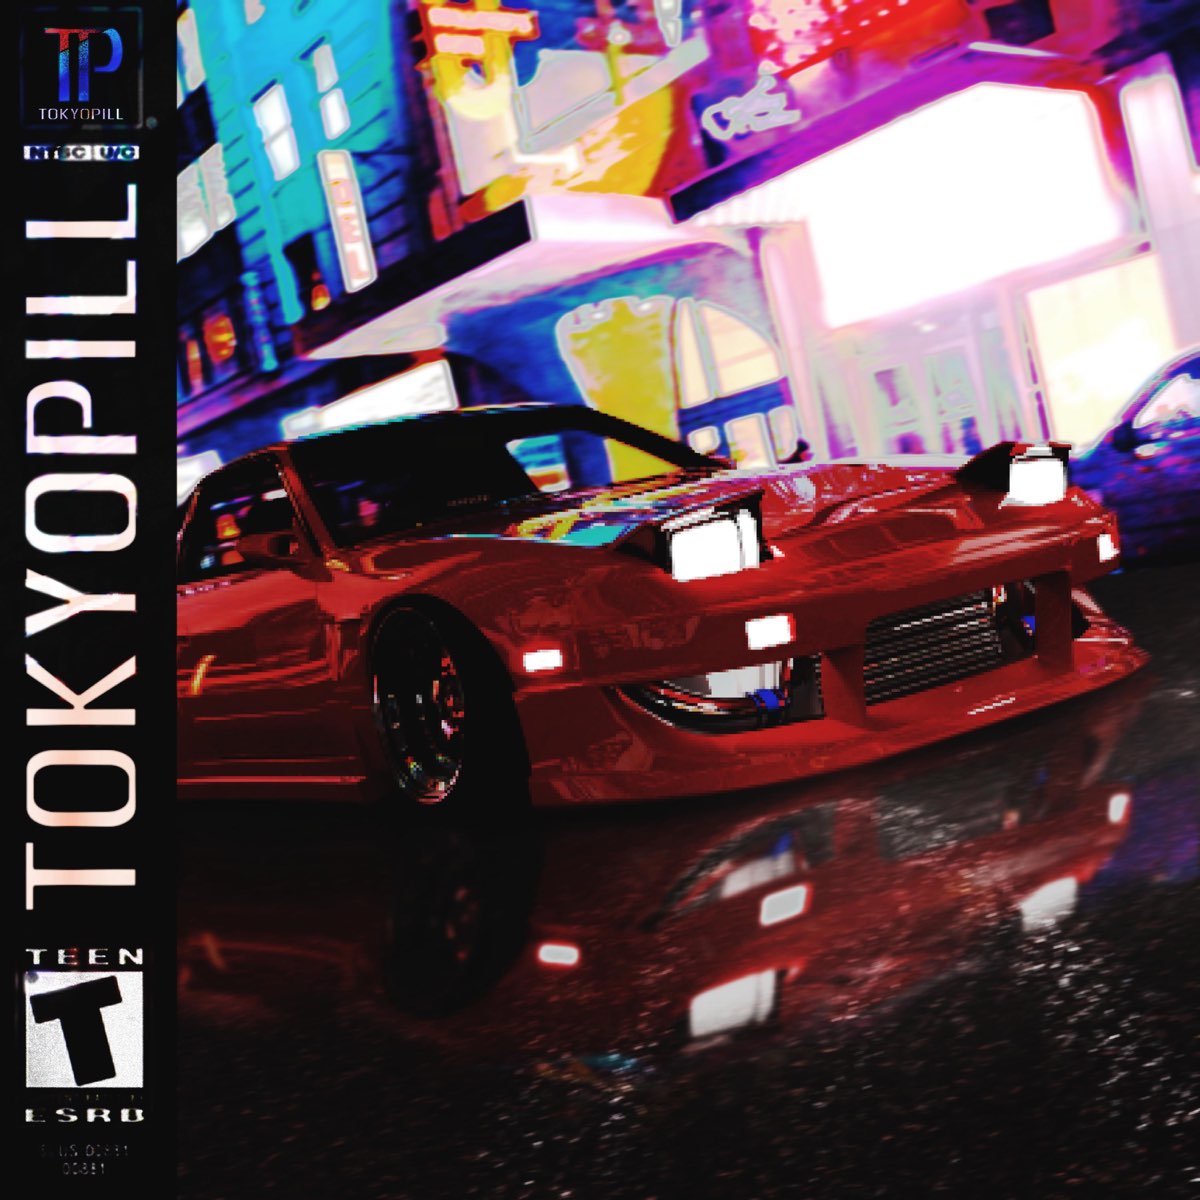 Tokyo mp3. Tokyopill Emptiness album. M E T A D A T A tokyopill.